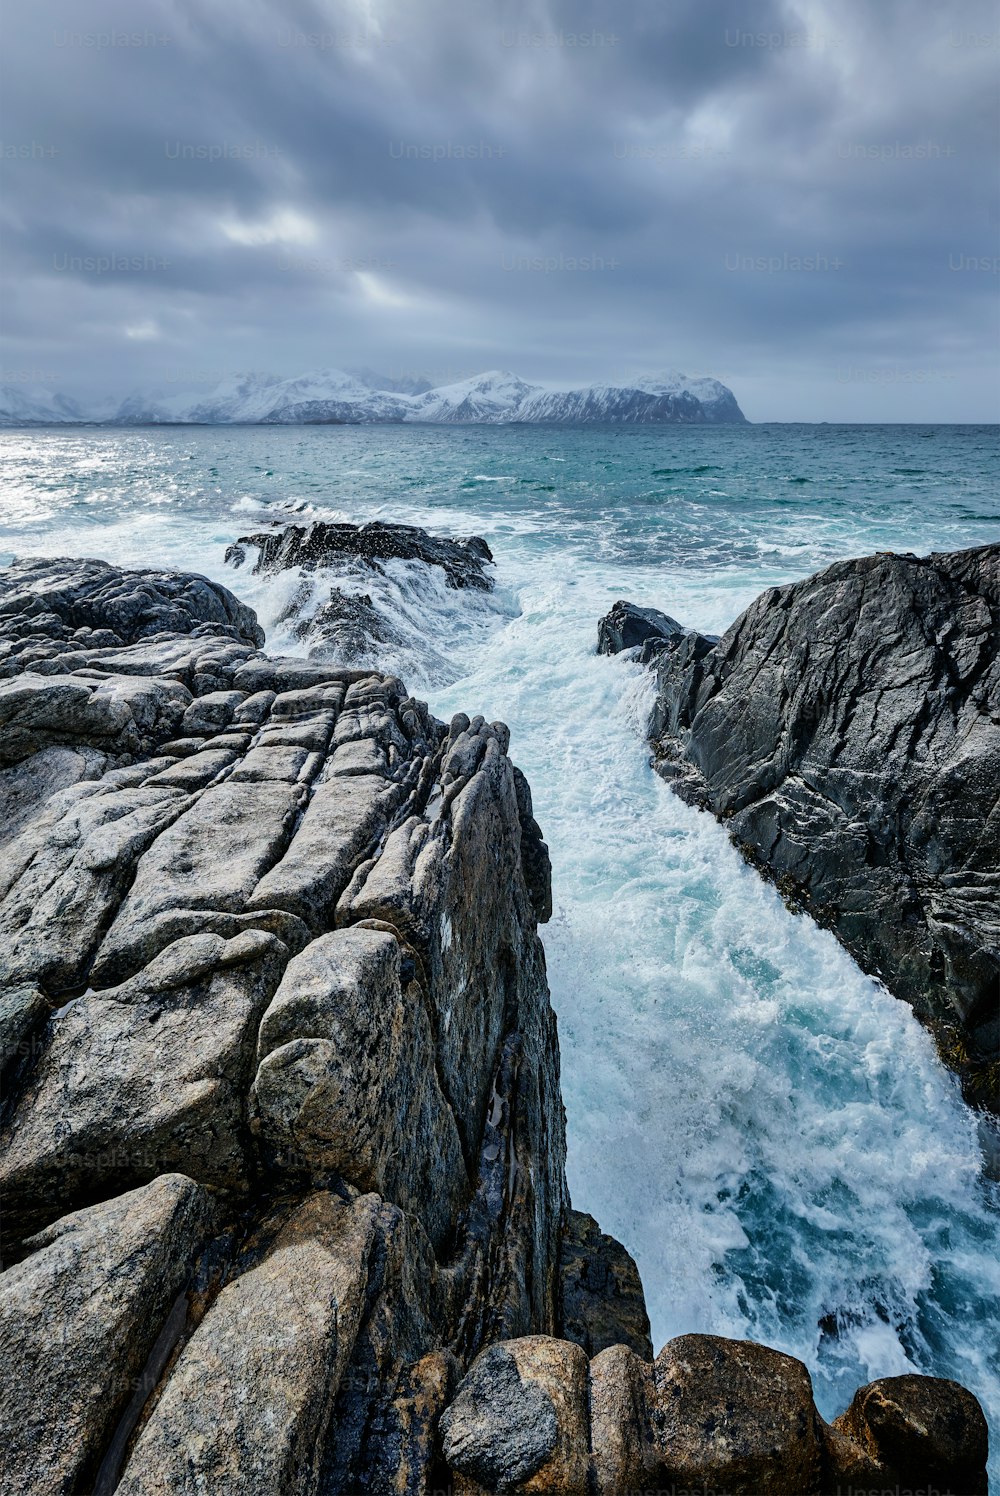 Des vagues de la mer norvégienne s’écrasent sur la côte rocheuse du fjord. Vikten, îles Lofoten, Norvège